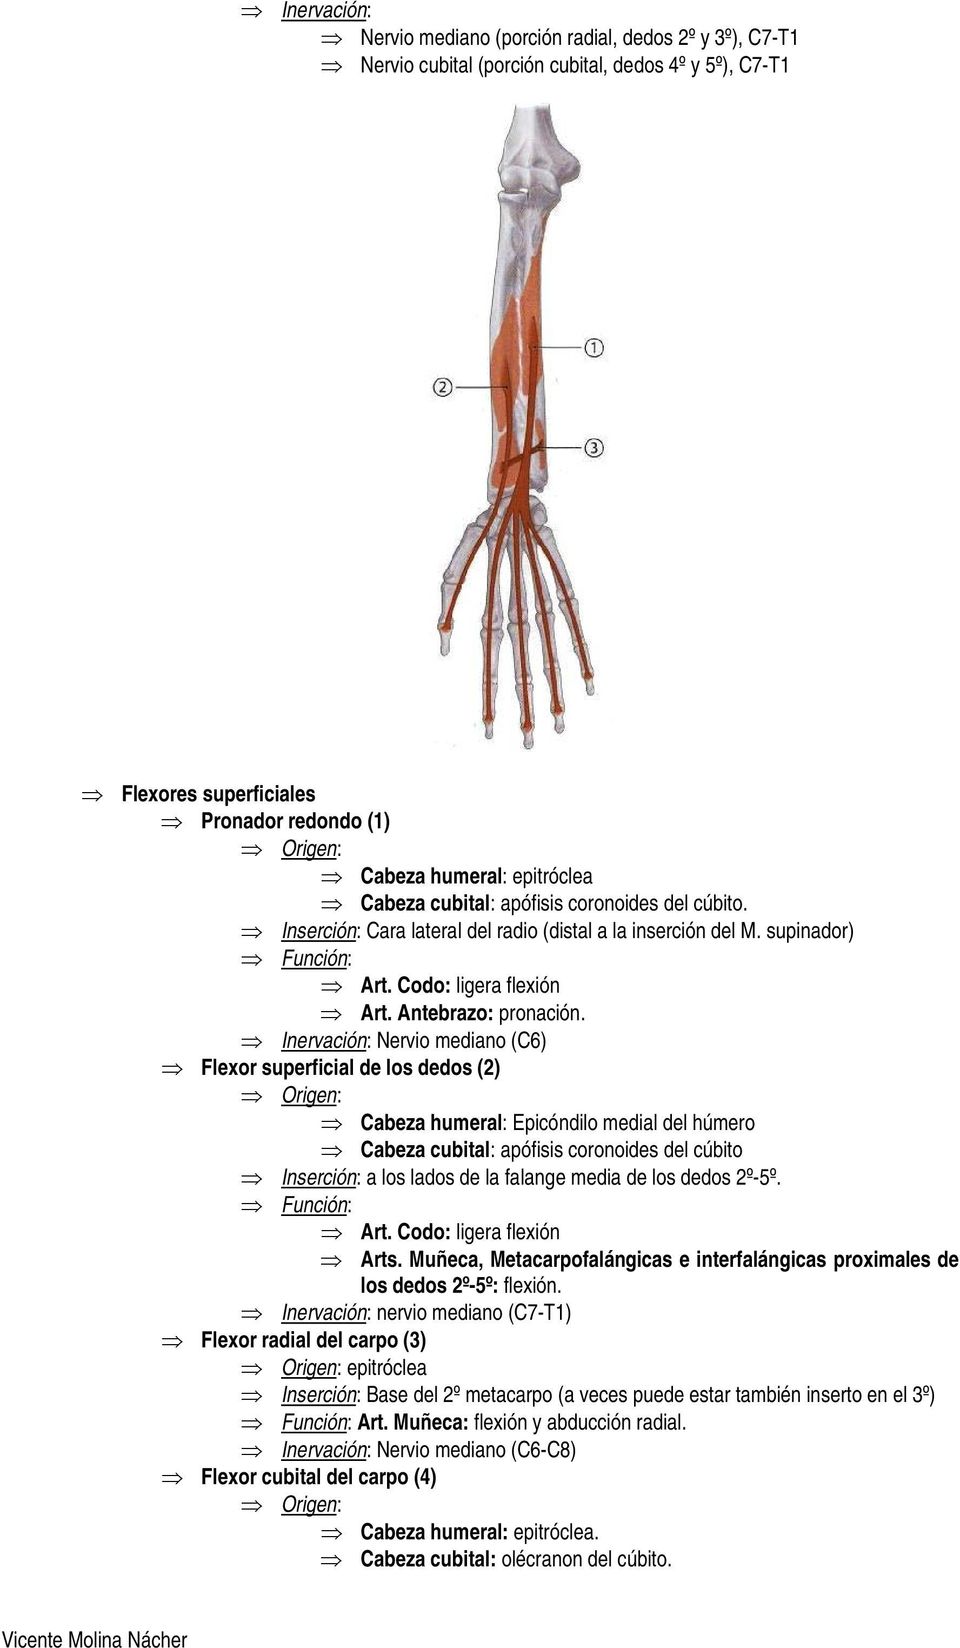 Inervación: Nervio mediano (C6) Flexor superficial de los dedos (2) Cabeza humeral: Epicóndilo medial del húmero Cabeza cubital: apófisis coronoides del cúbito Inserción: a los lados de la falange